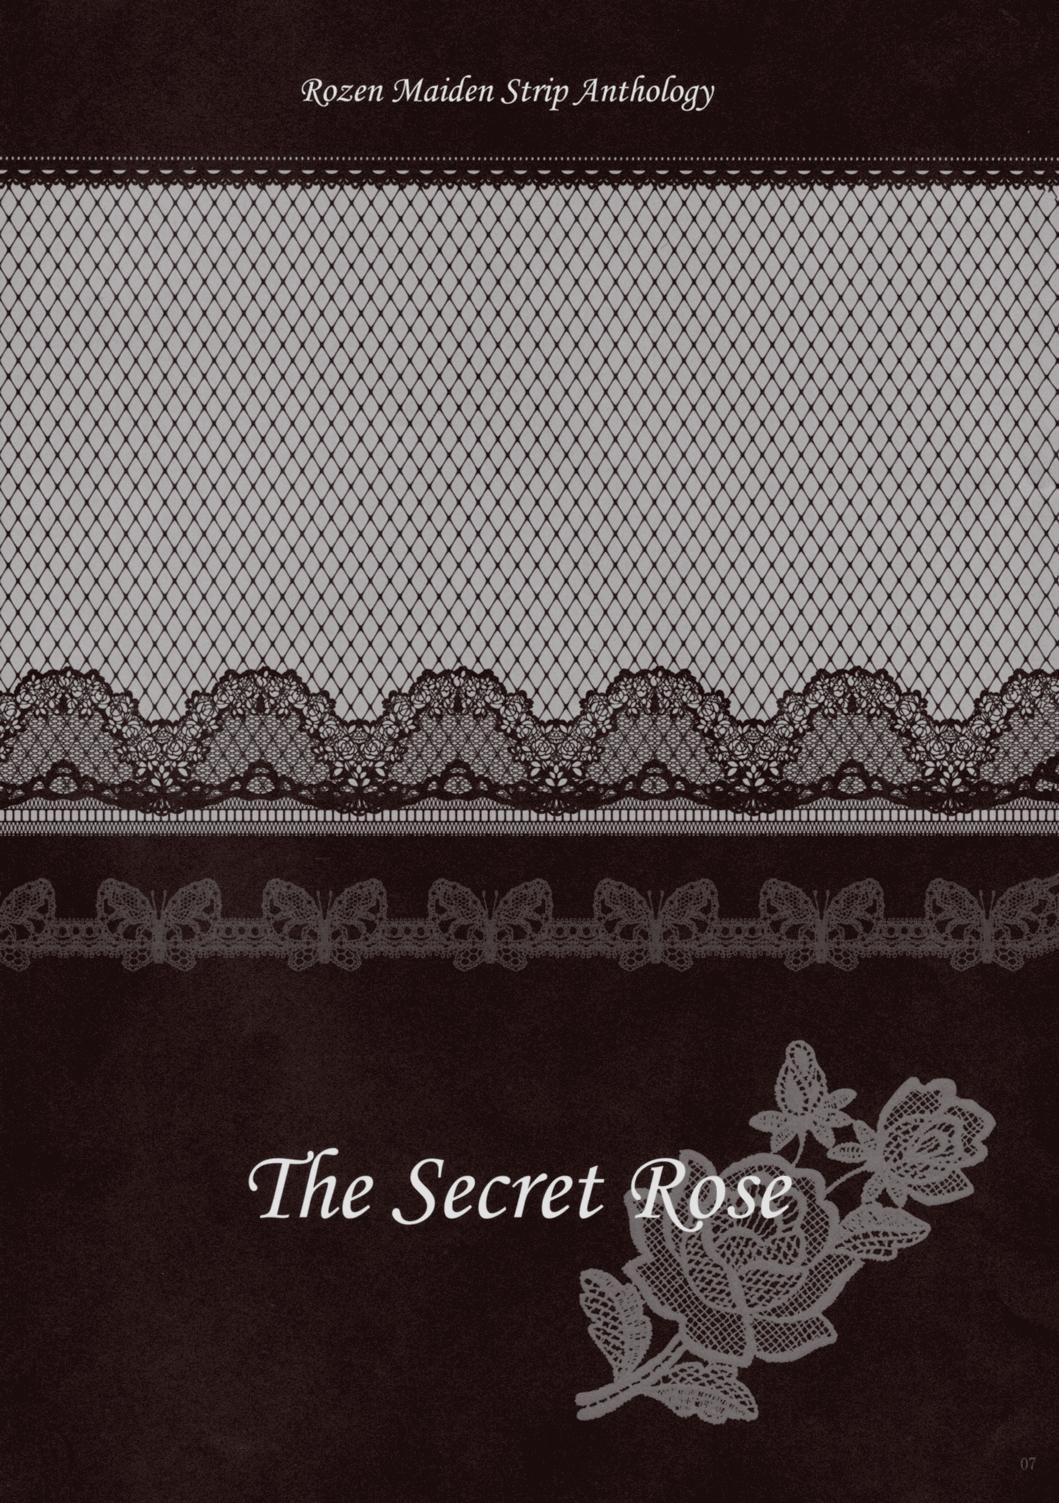 Hardcore Sex Rozen Maiden Strip Gallery "The Secret Rose" - Rozen maiden Spread - Page 6